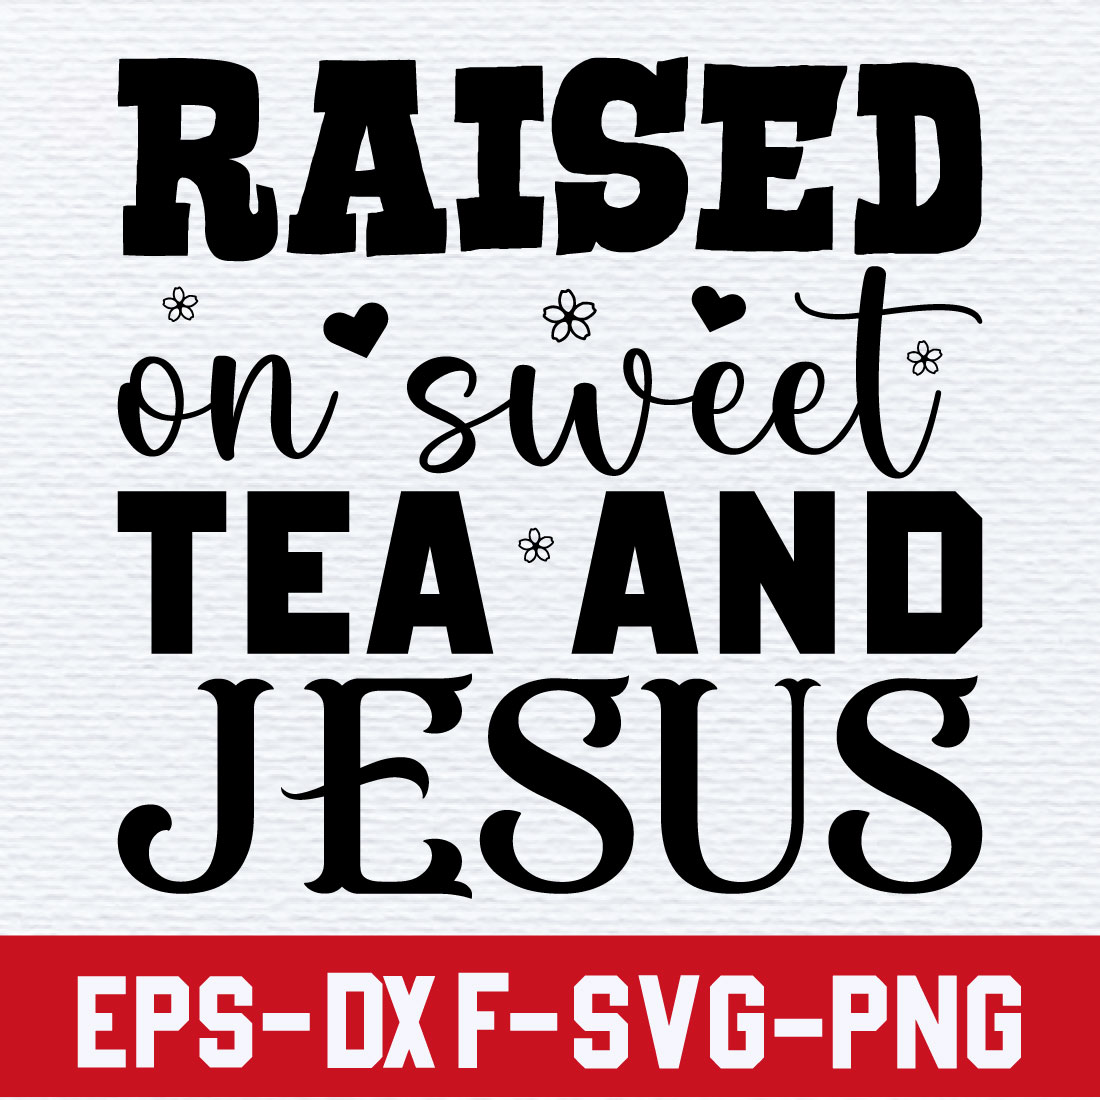 Raised on sweet tea and Jesus cover image.